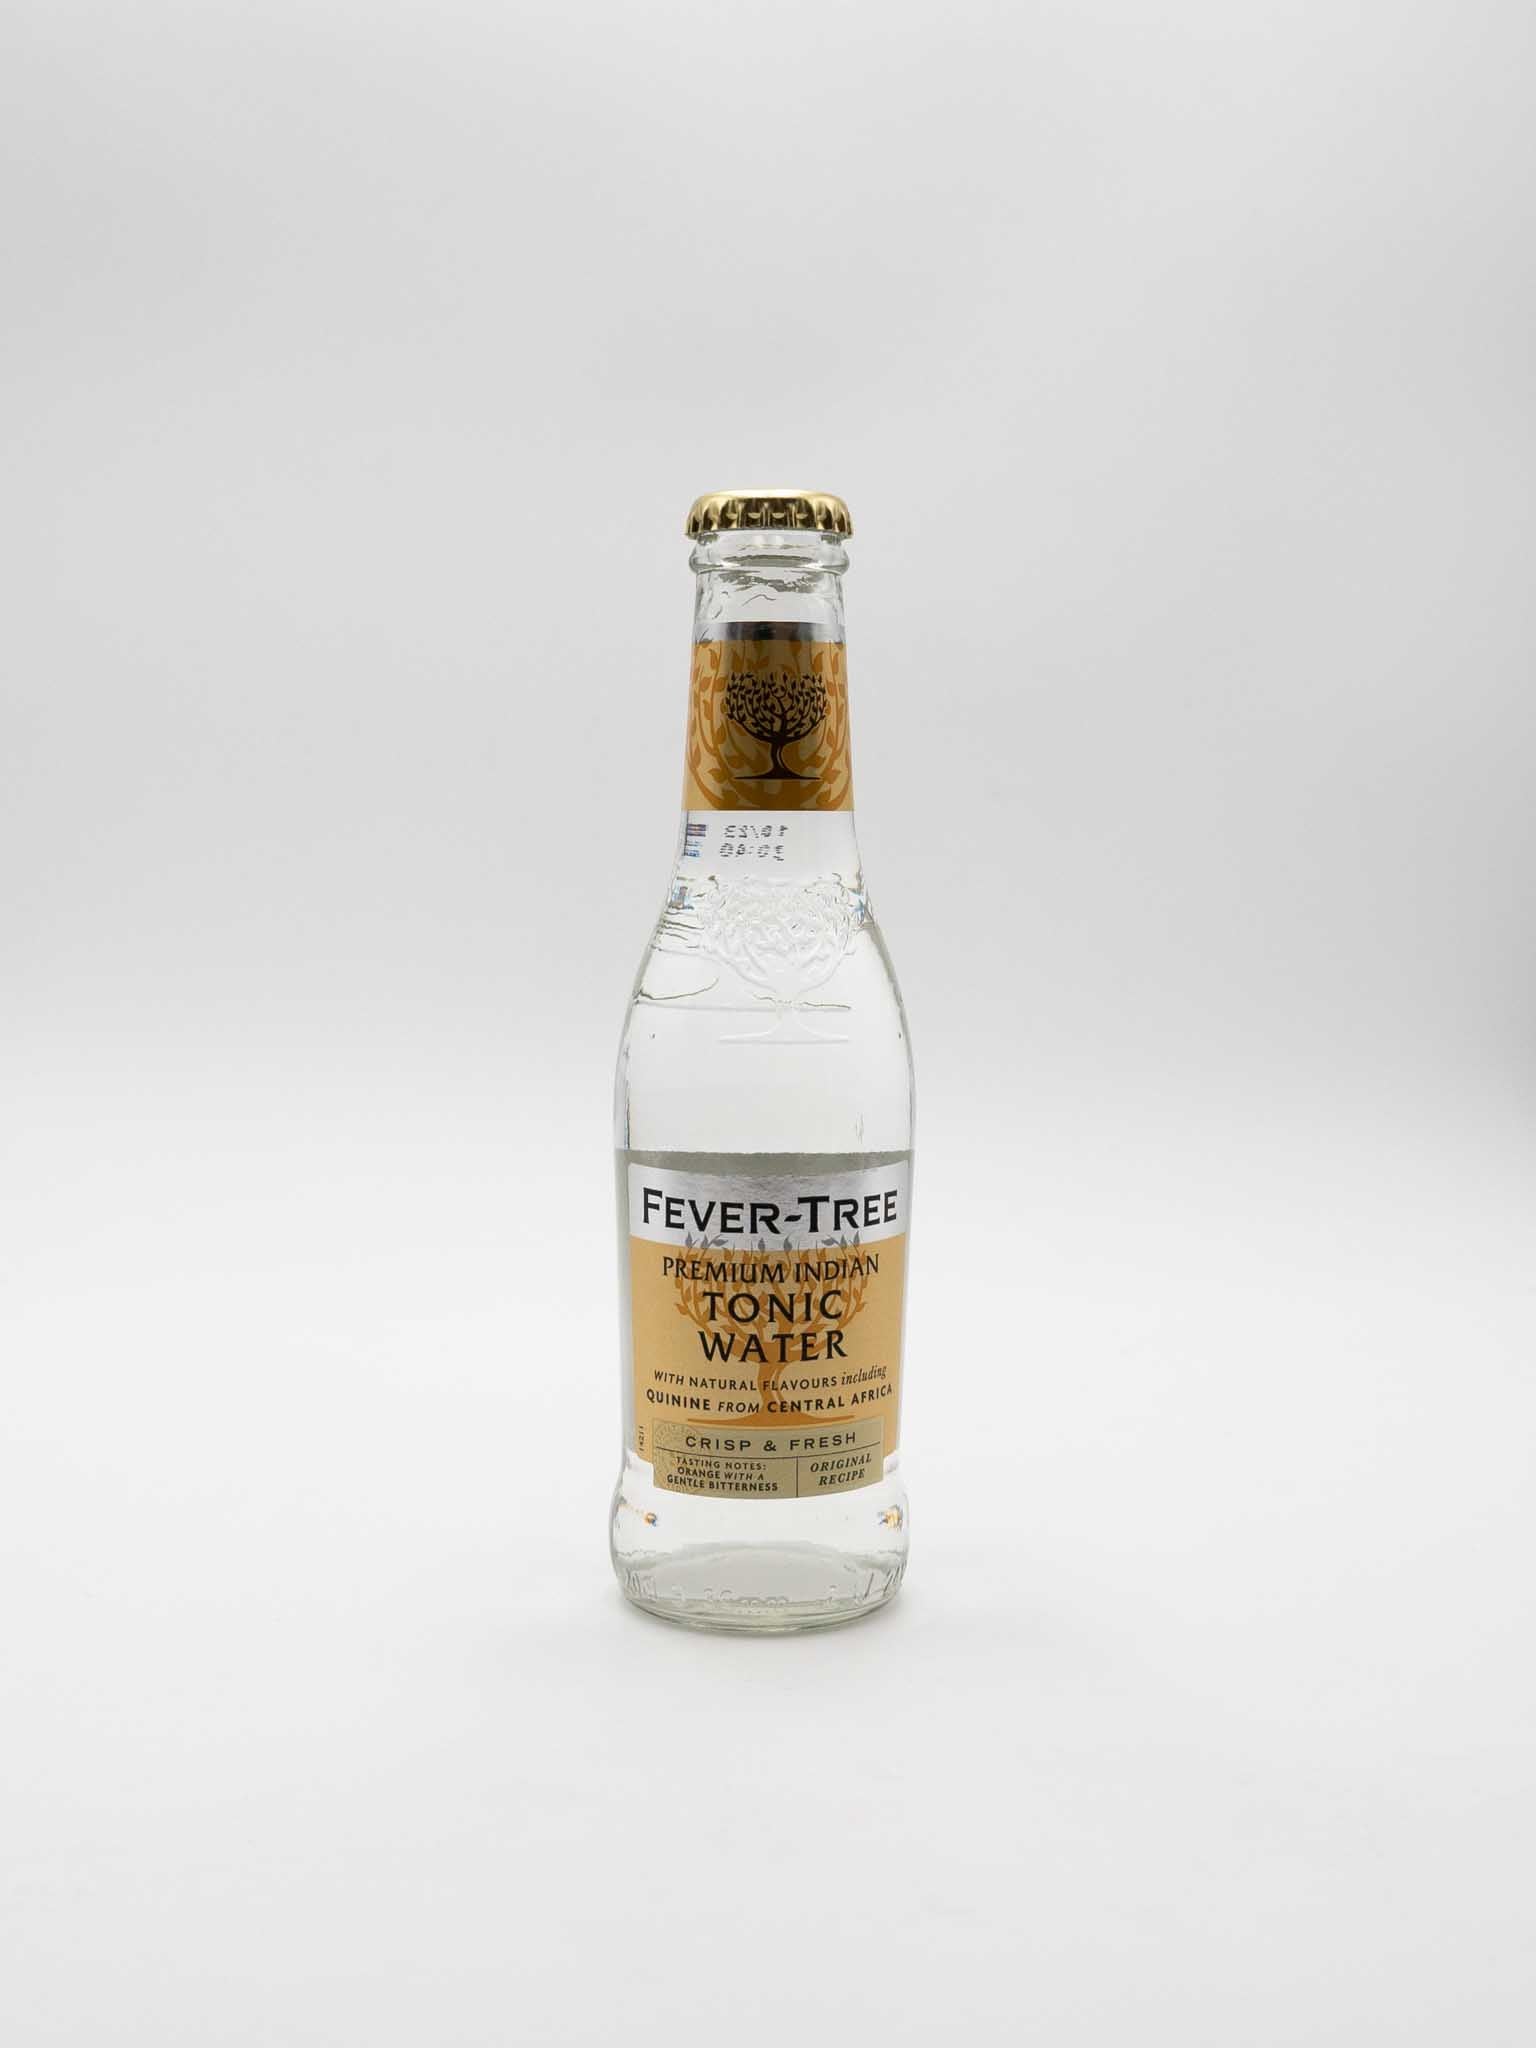 Acqua Tonica Premium Indian - Fever-Tree